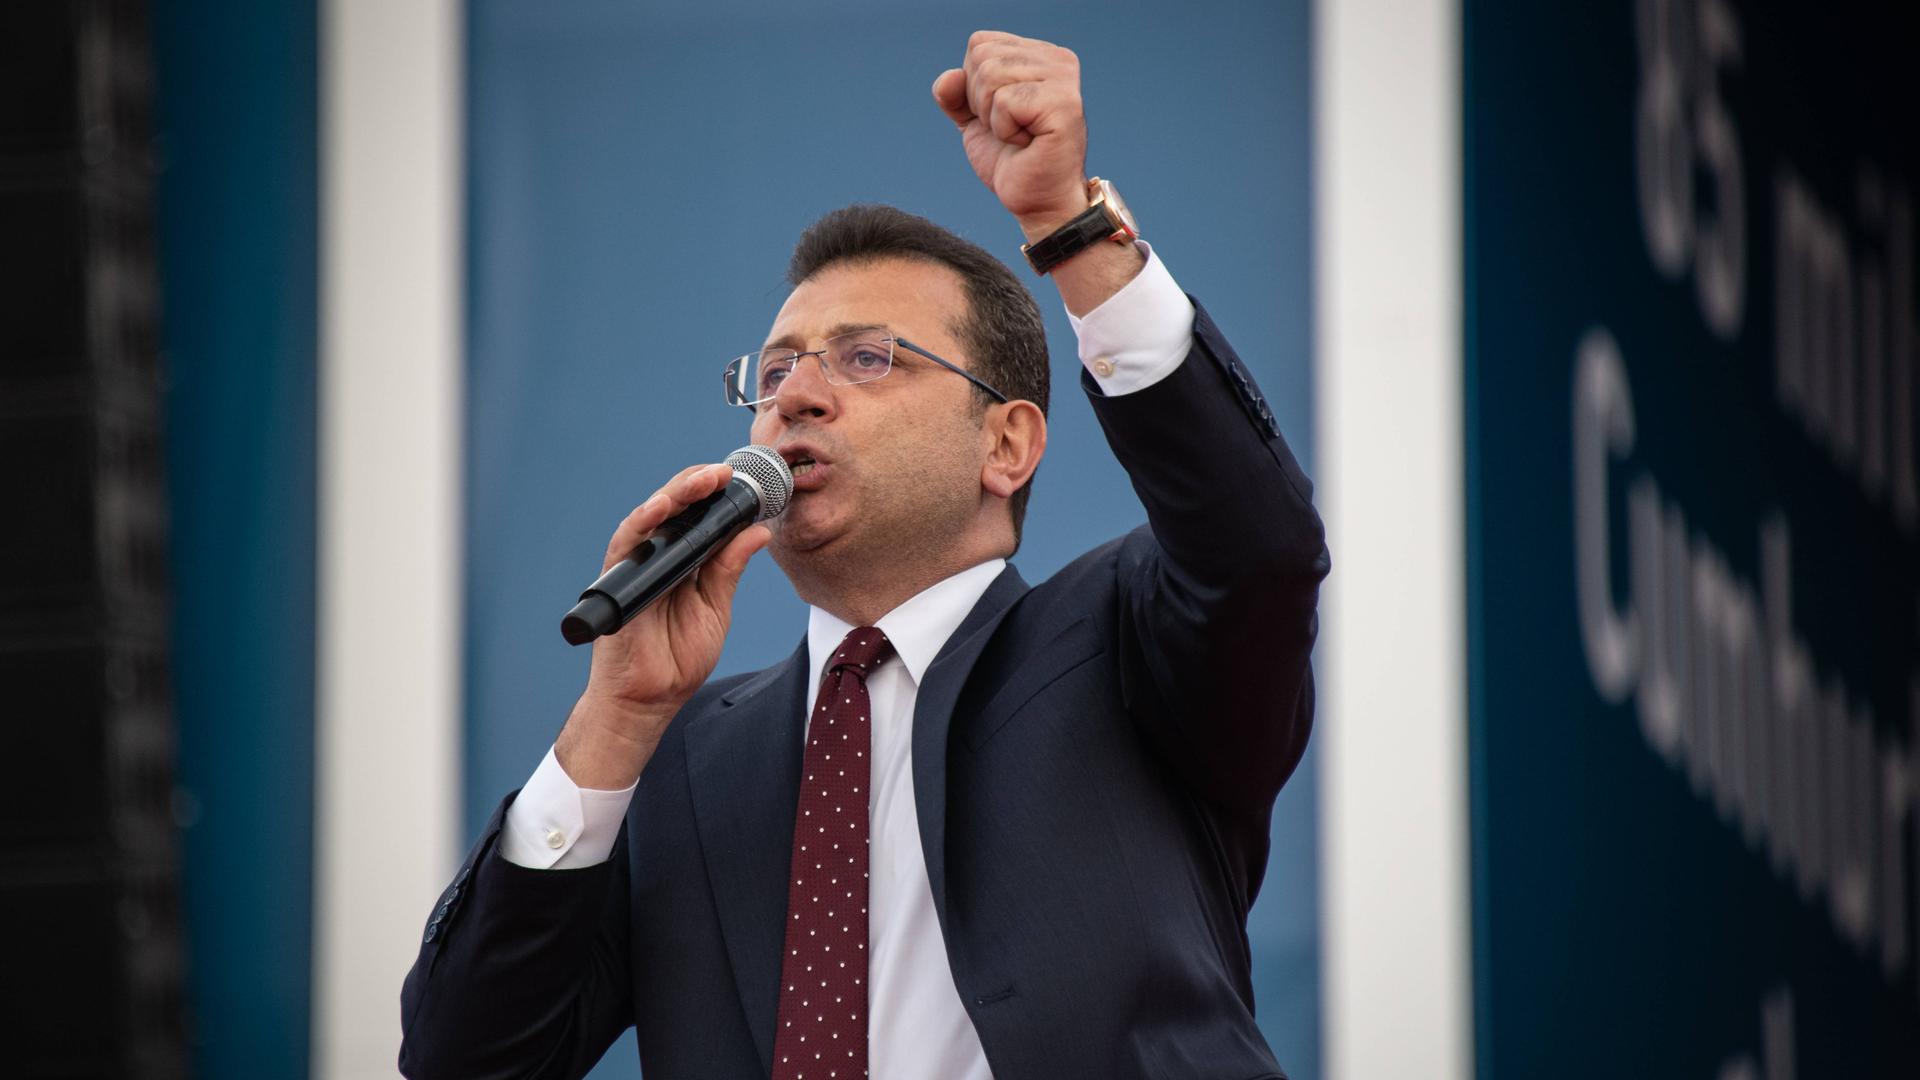 Der türkische Oppositionspolitiker und Bürgermeister von Istanbul, Ekrem Imamoglu, steht auf einer Bühne und spricht zu den Teilnehmern einer Wahlkampfveranstaltung in Istanbul